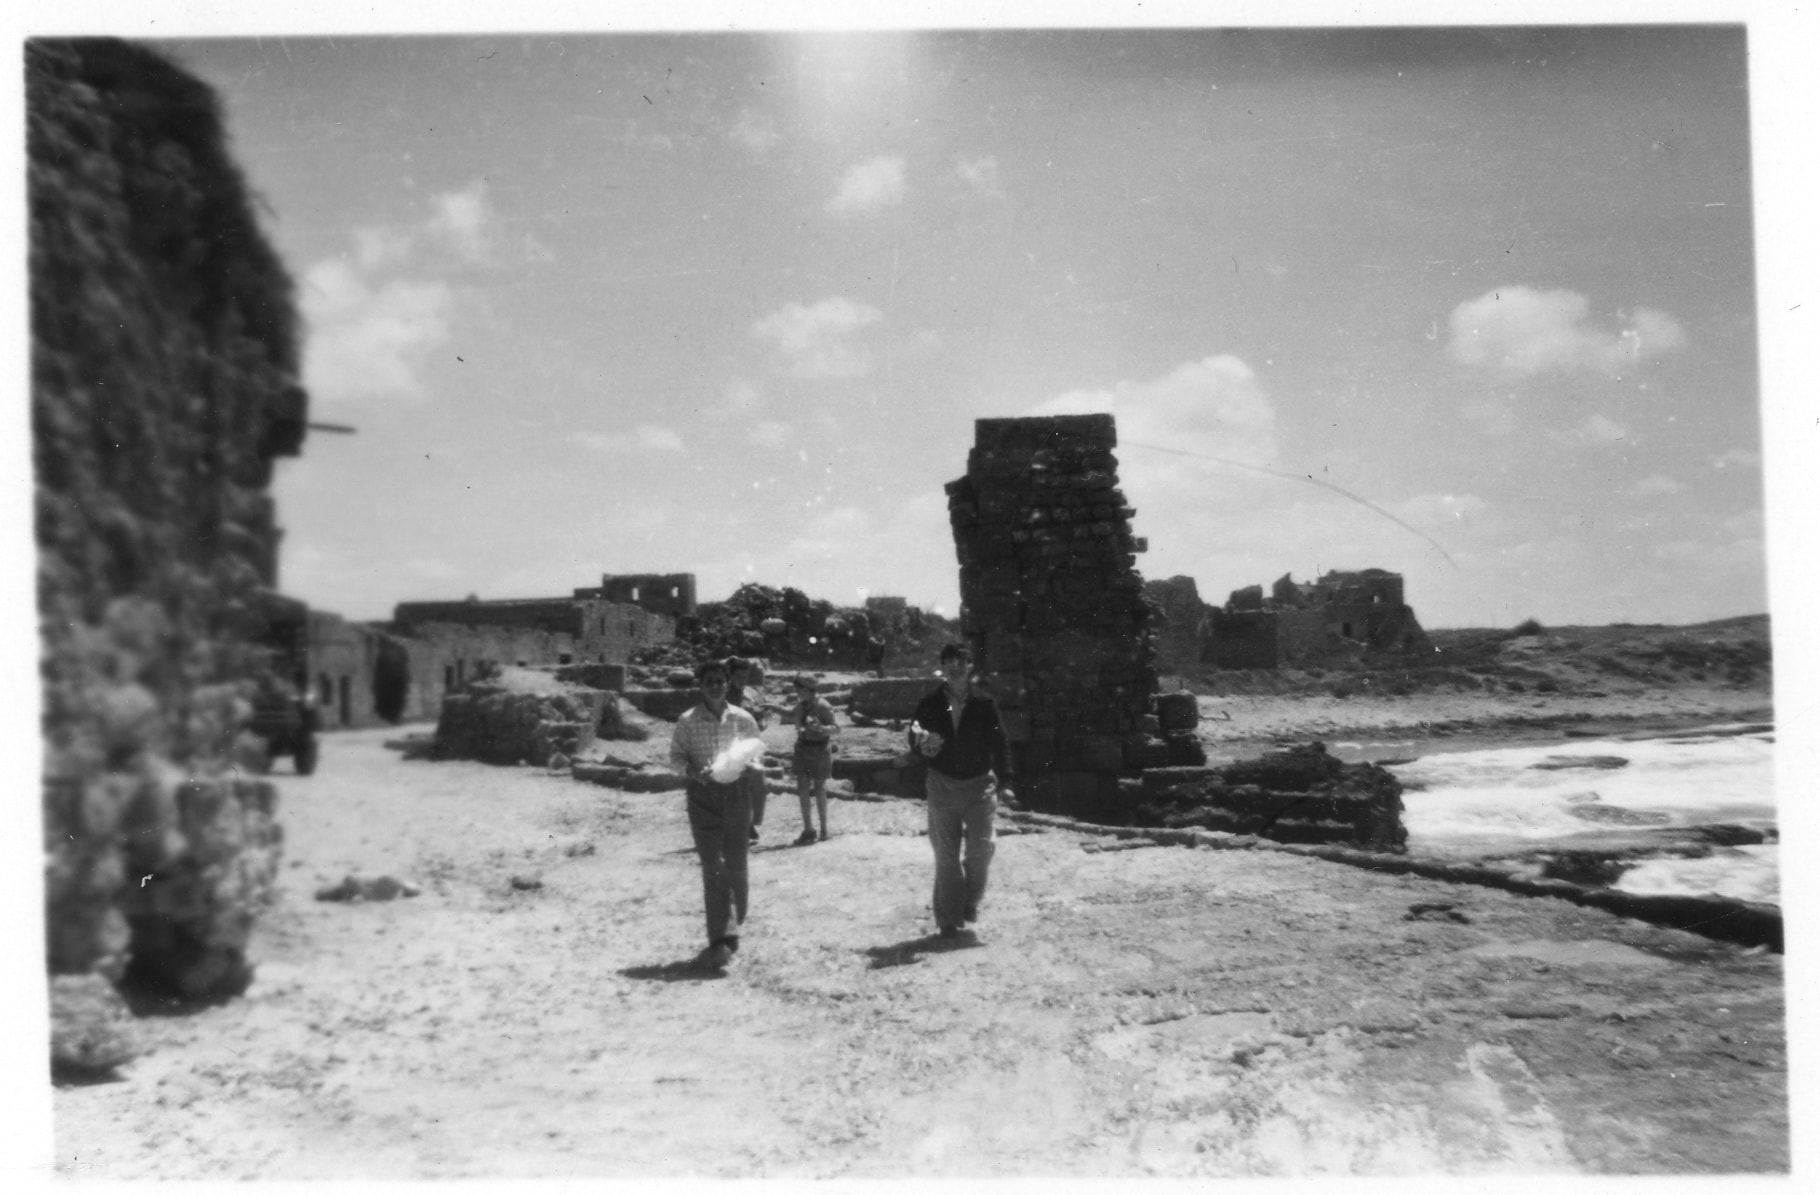 תצלום בשחור-לבן של שרידי מבנים על חוף הים. כמה נערים פוסעים על דרך לא סלולה בין המבנים.